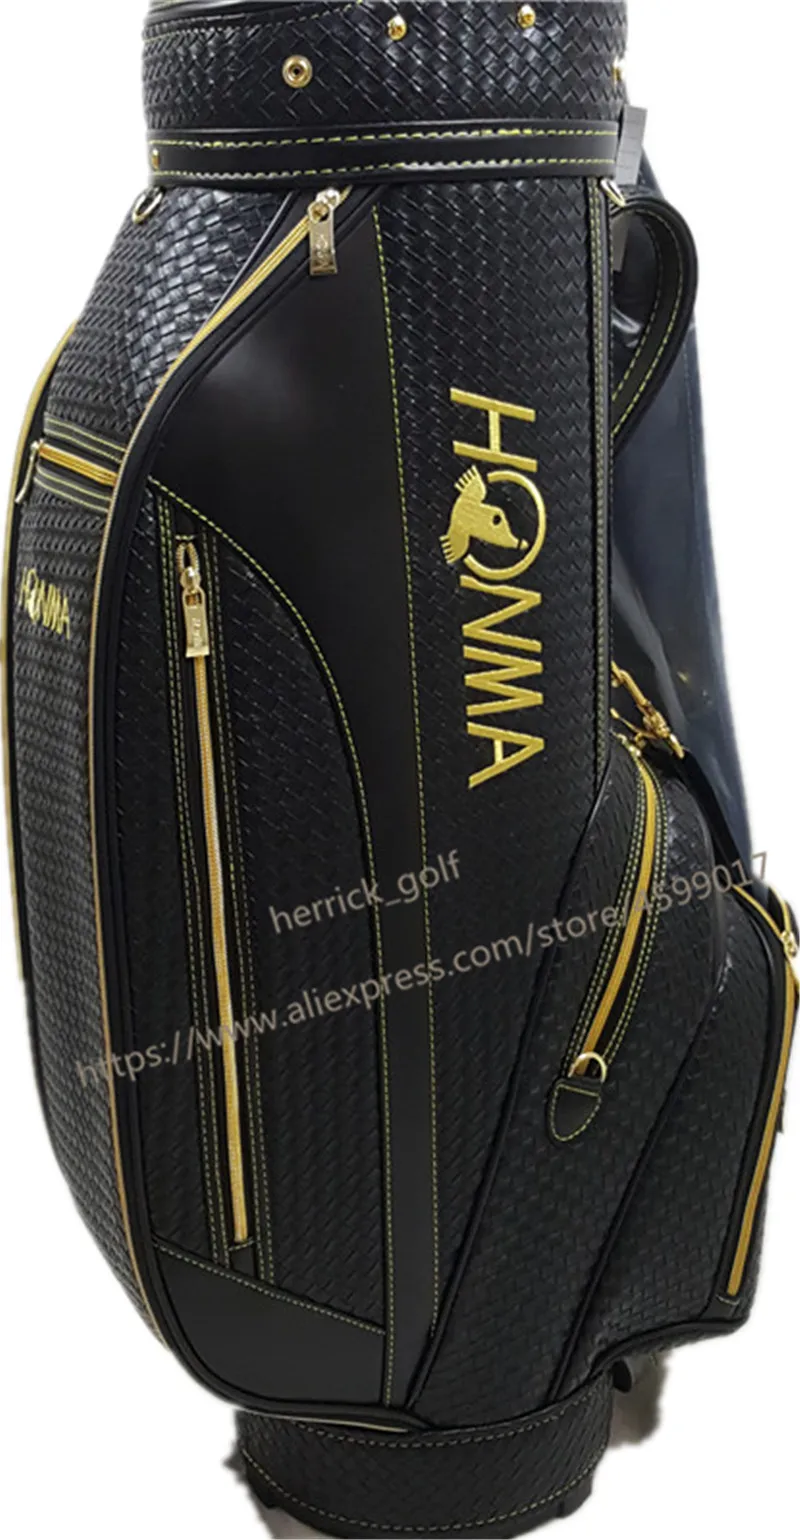 Набор для клюшек для гольфа HONMA S-06, 4 звезды, полный набор клюшек для гольфа, драйвер+ фарватер, дерево+ утюги+ клюшка, графитовый Вал, чехол, сумка